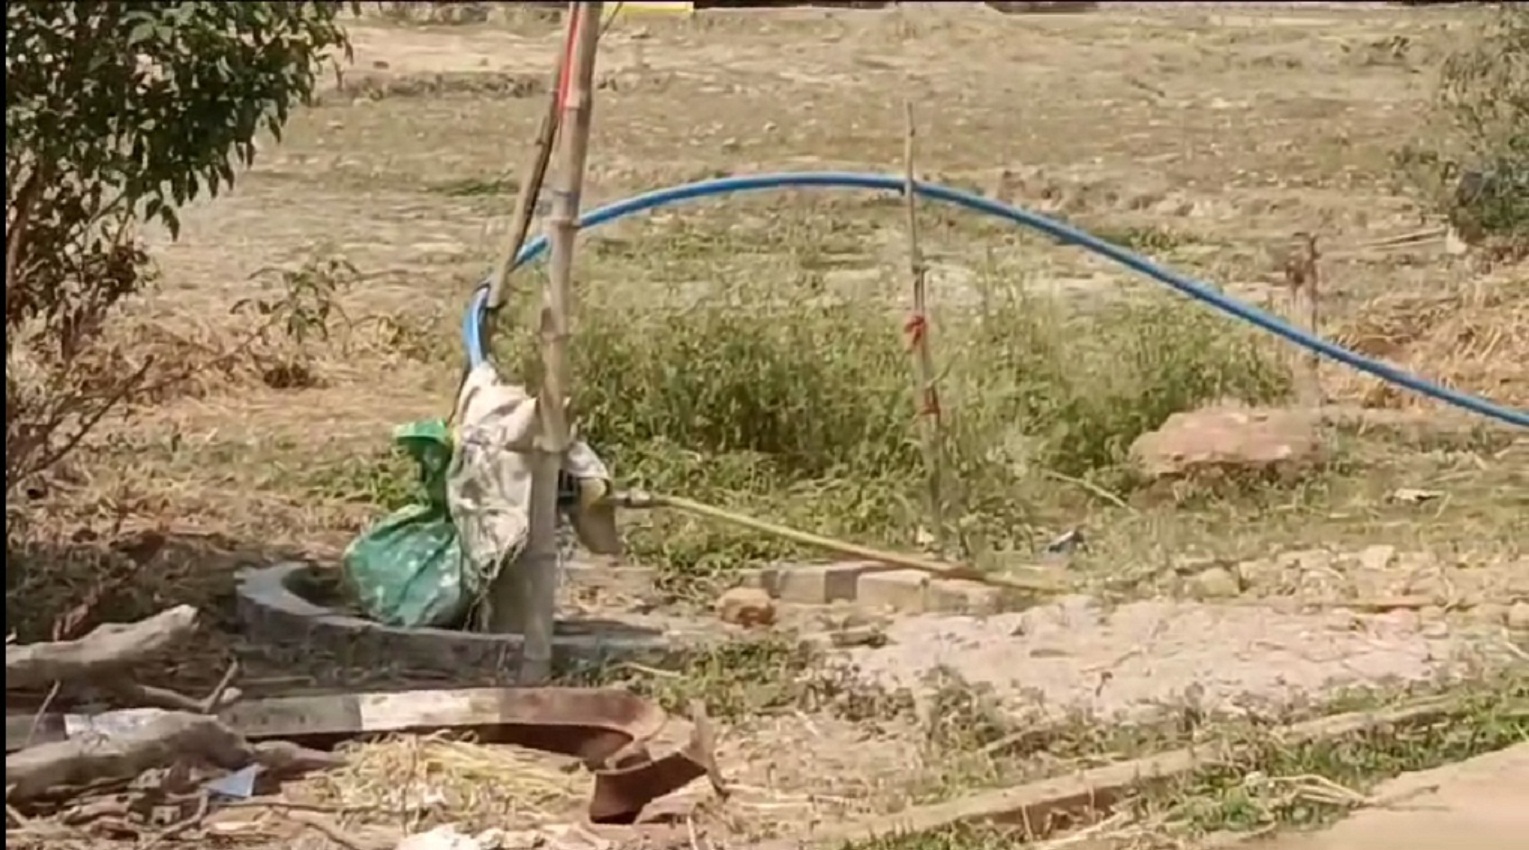 Dominance-सरकारी हैंडपंप पर किया कब्जा, पानी के लिए परेशान हो रहे ग्रामीण